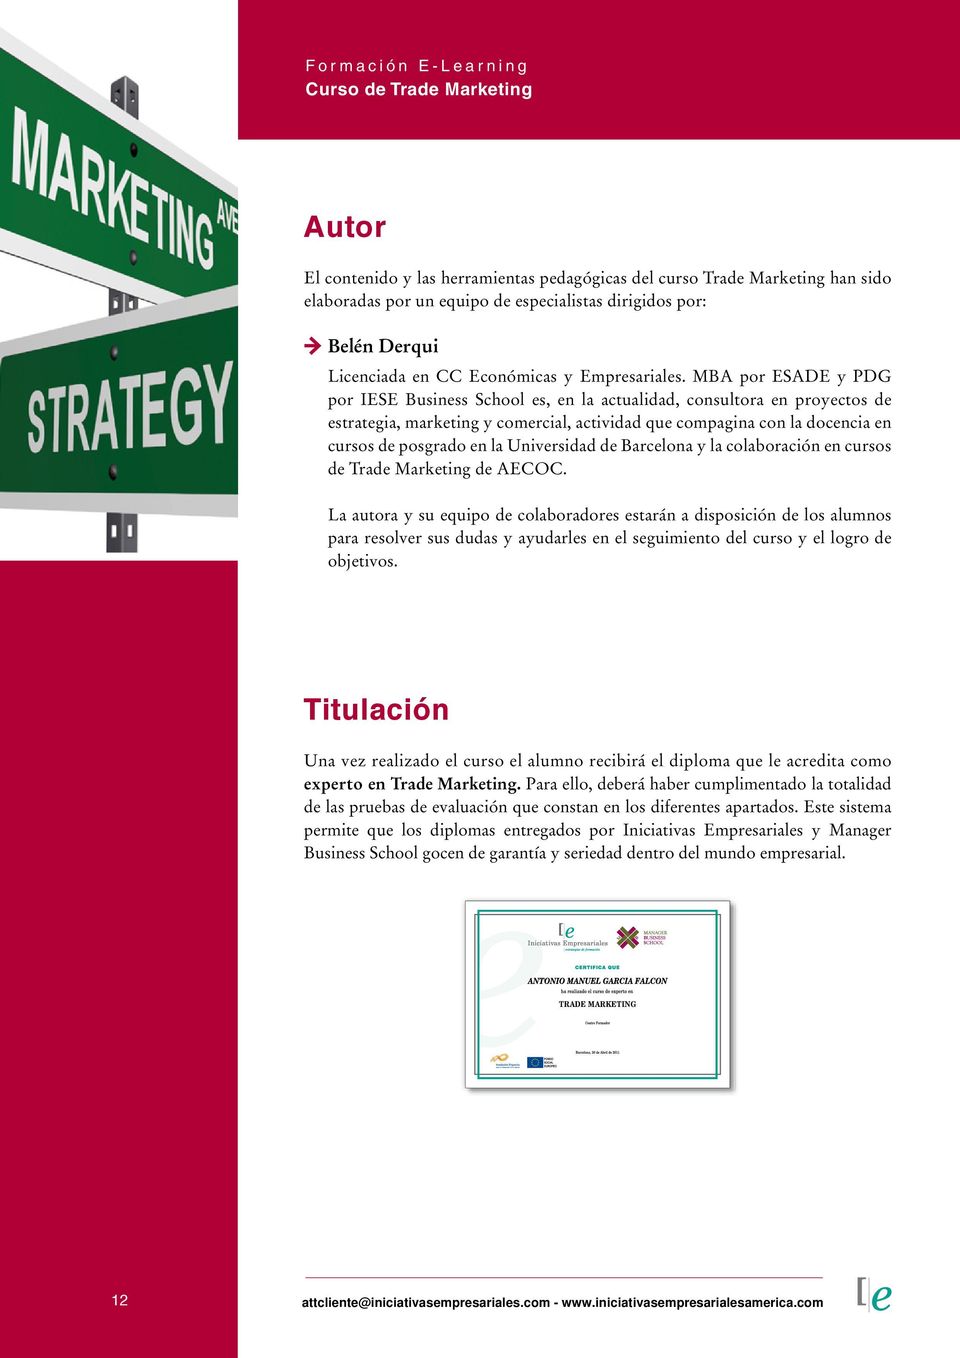 Universidad de Barcelona y la colaboración en cursos de Trade Marketing de AECOC.